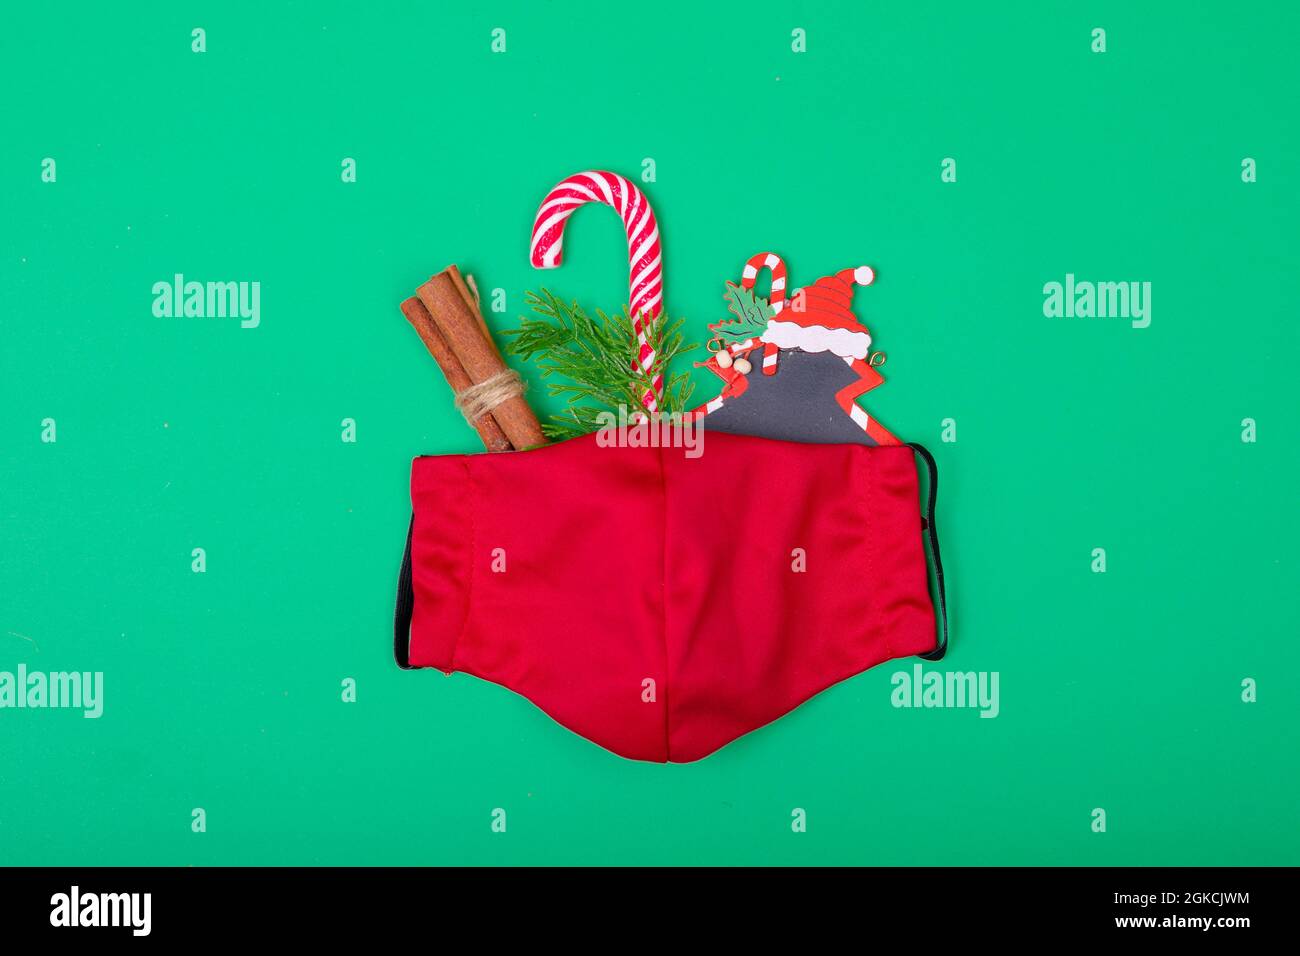 Composición de la máscara roja de la cara con decoraciones de Navidad sobre fondo verde Foto de stock